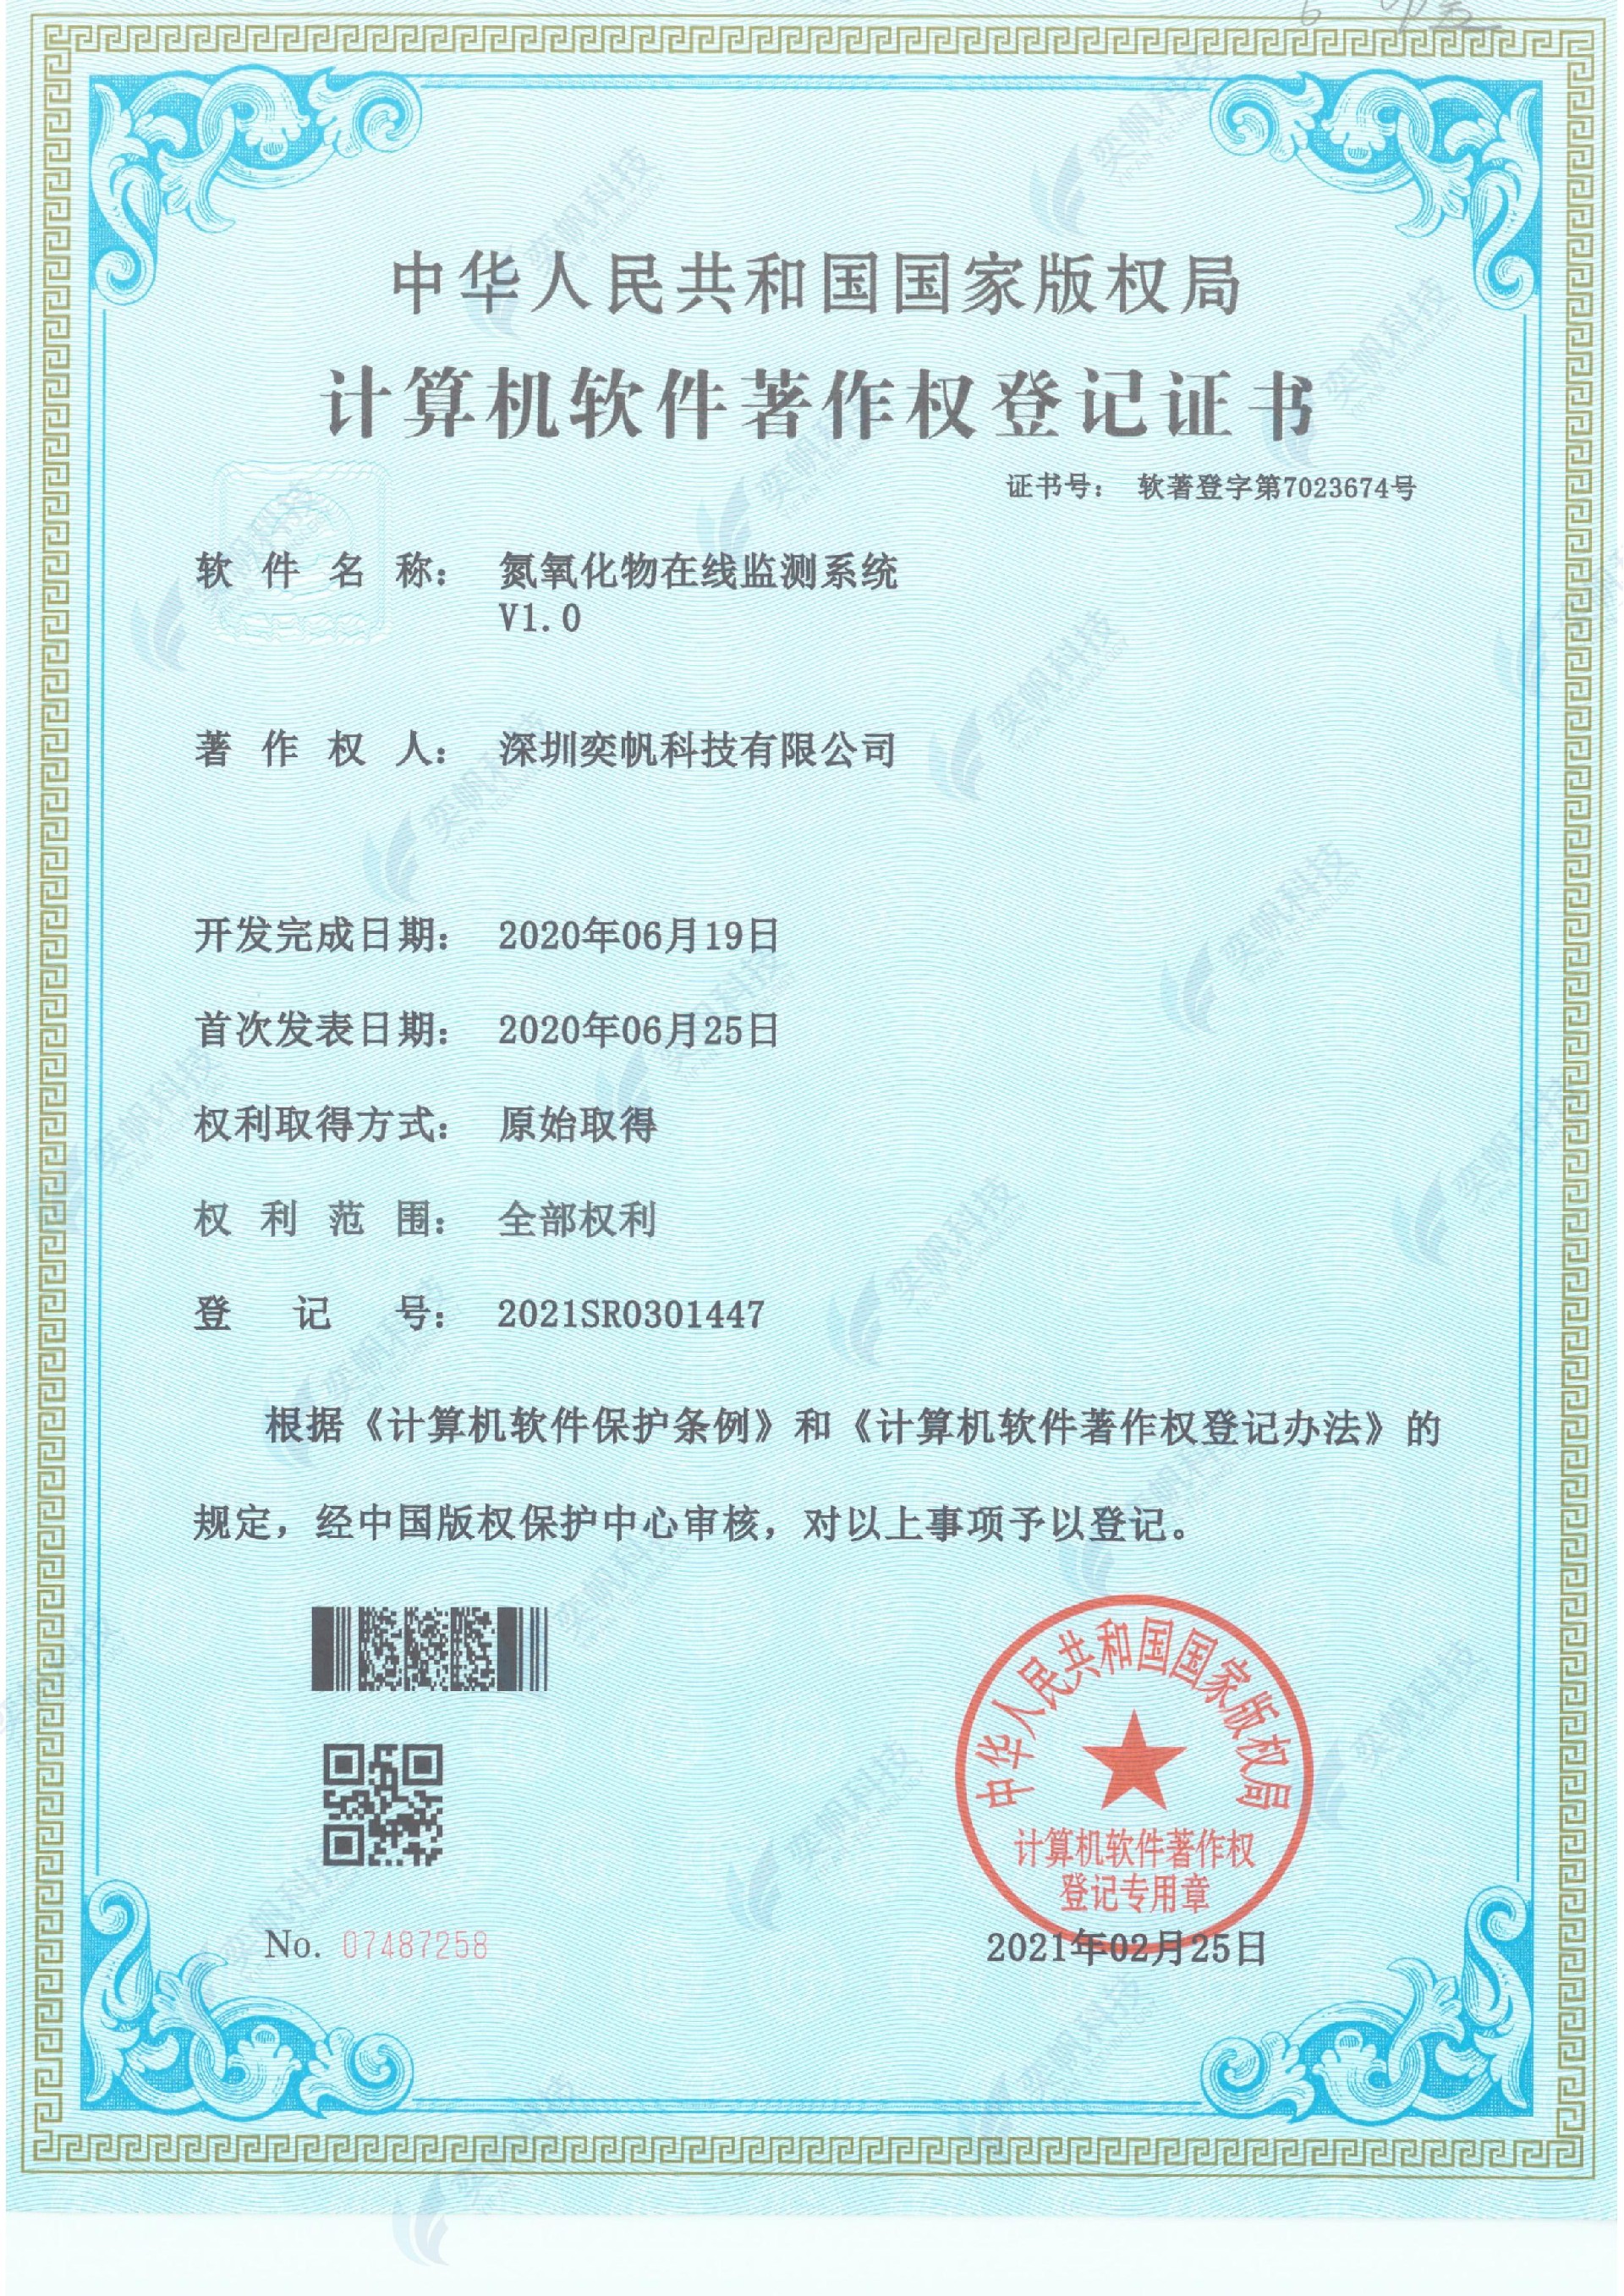 氮氧化物在线监测系统-计算机软件著作权登记证书_00.jpg